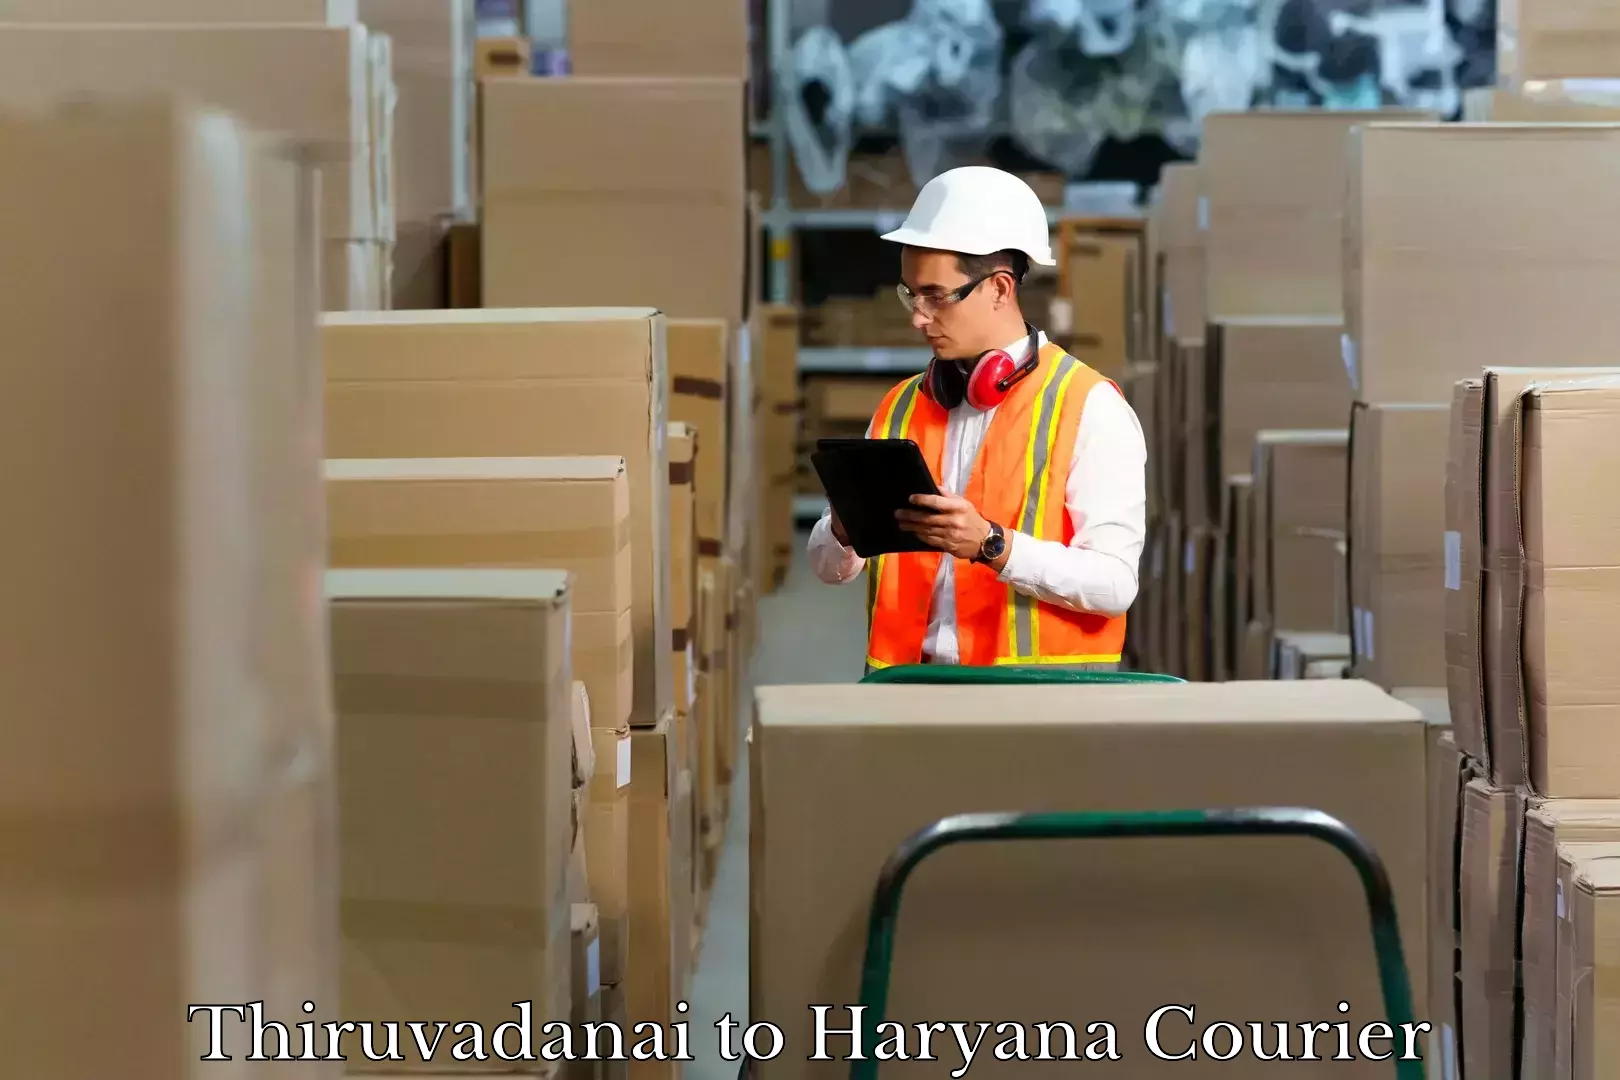 Baggage shipping advice Thiruvadanai to Chaudhary Charan Singh Haryana Agricultural University Hisar